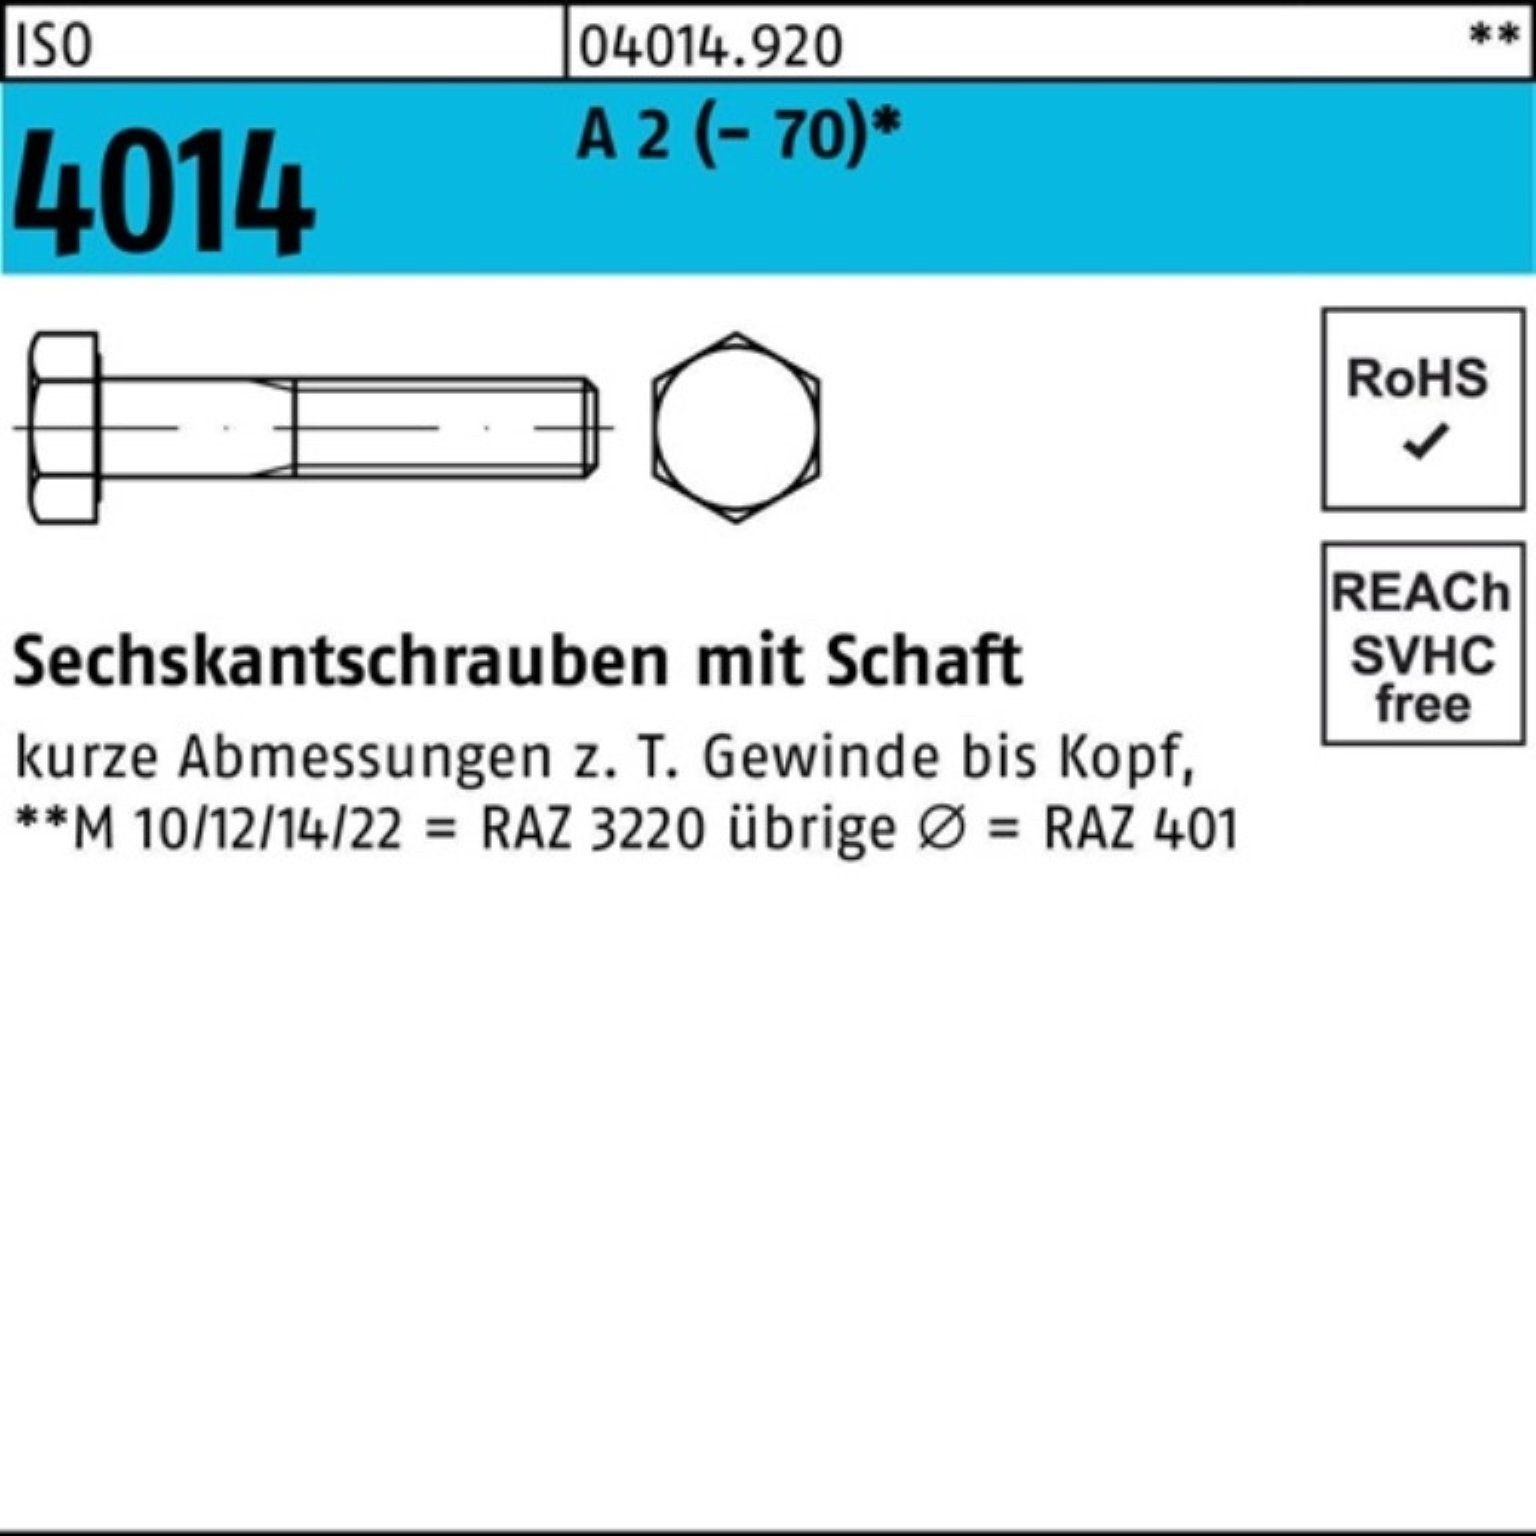 Bufab Sechskantschraube 100er Pack Sechskantschraube ISO 4014 Schaft M16x 190 A 2 (70) 1 St